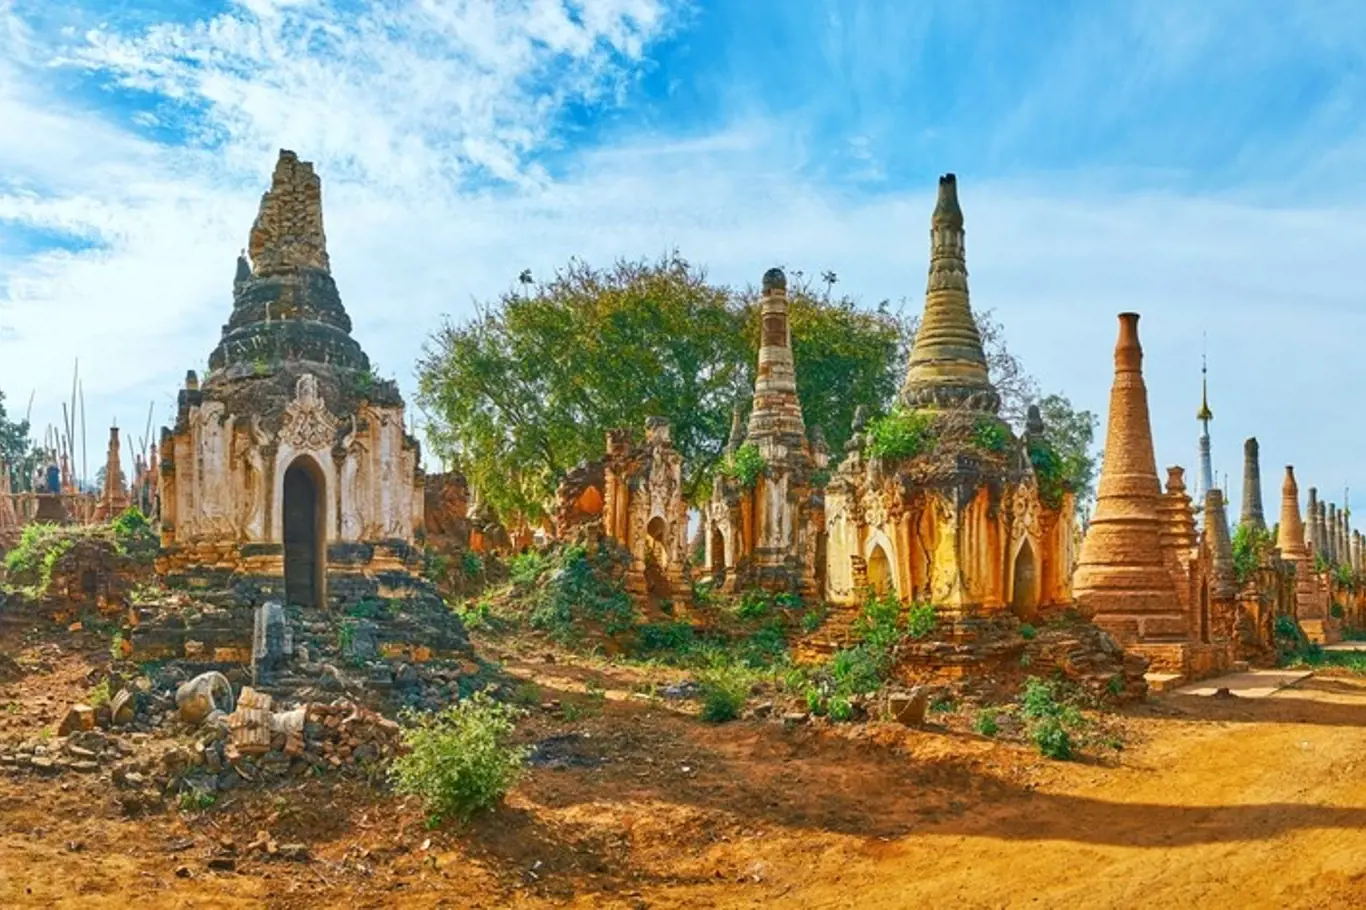 V srdci Myanmarské džungle se nachází více než 1000 pagod obklopené zelení